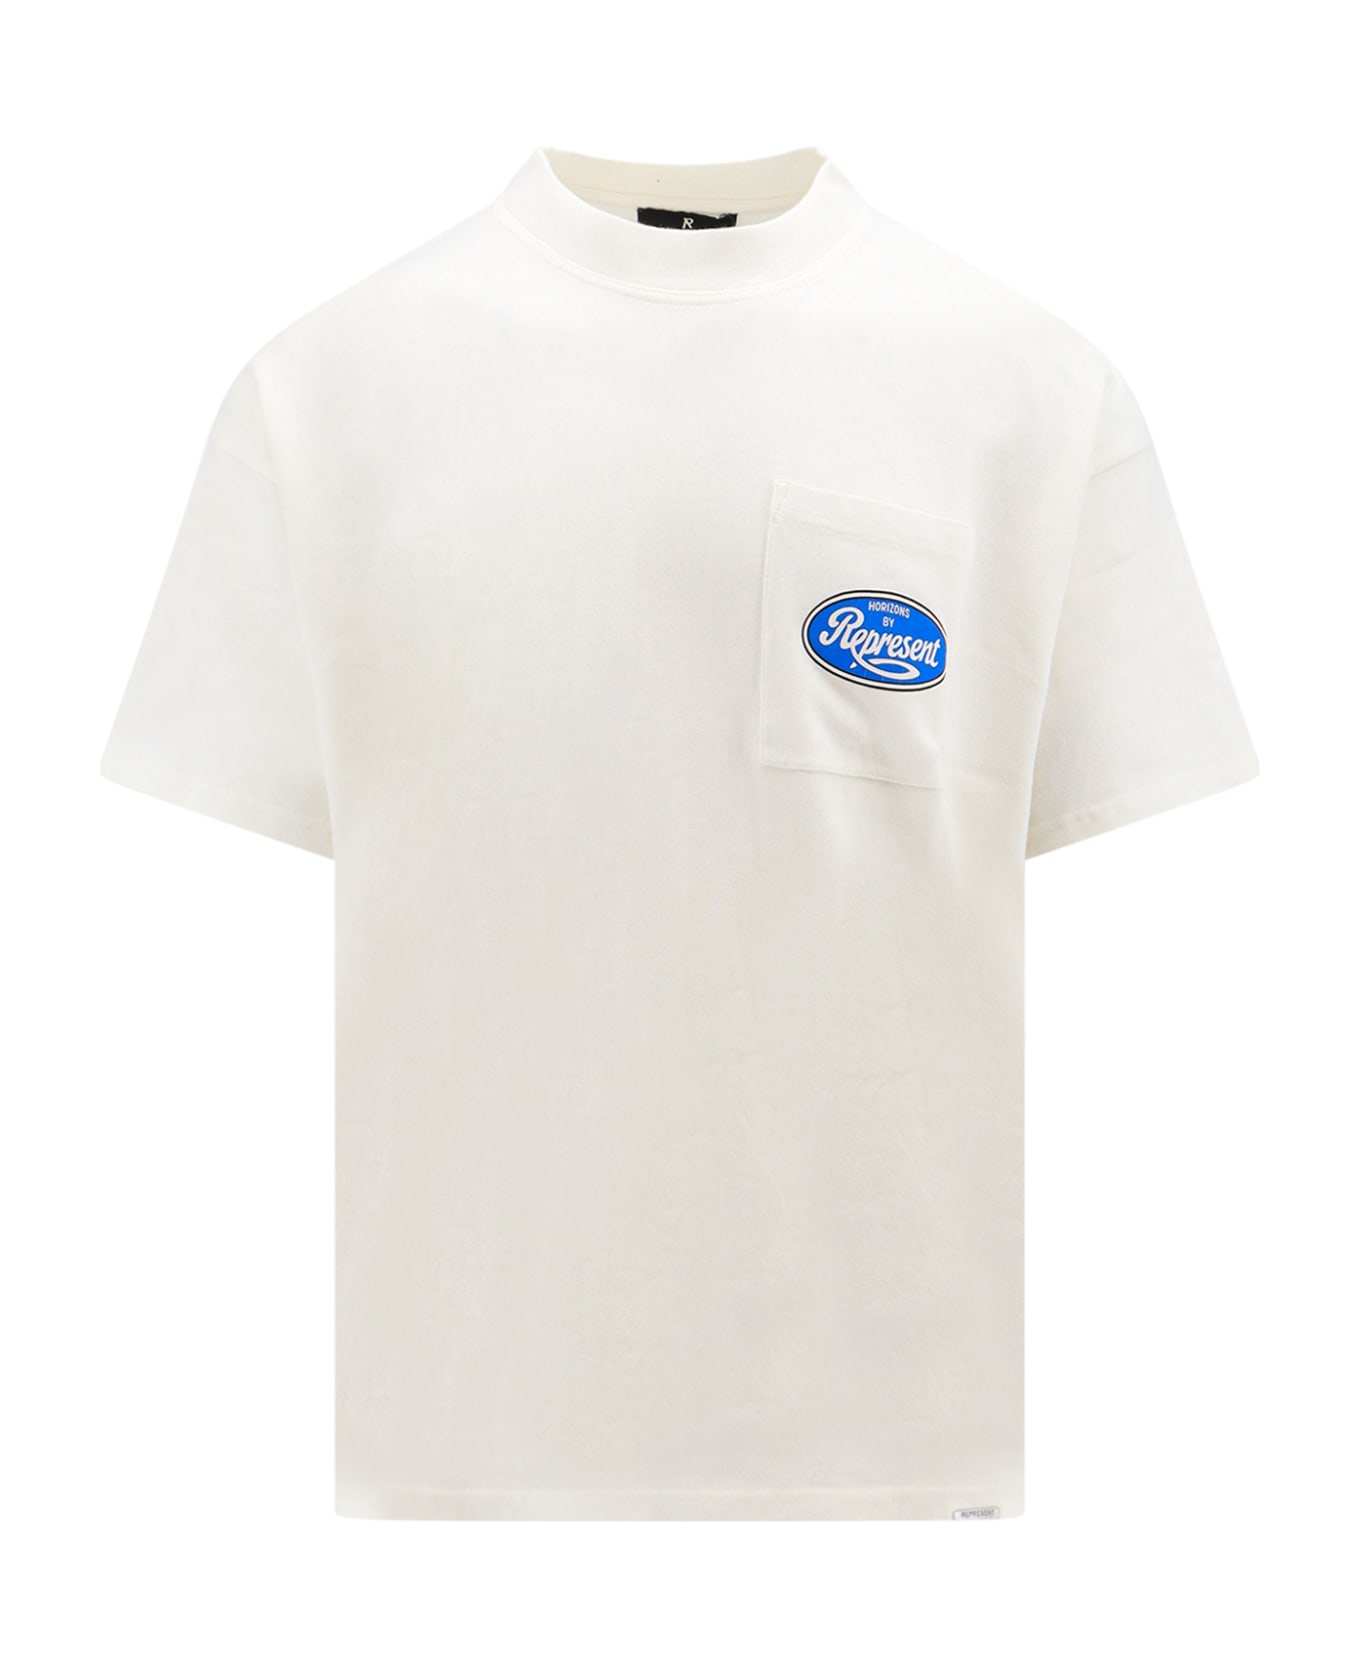 REPRESENT T-shirt - FLAT WHITE